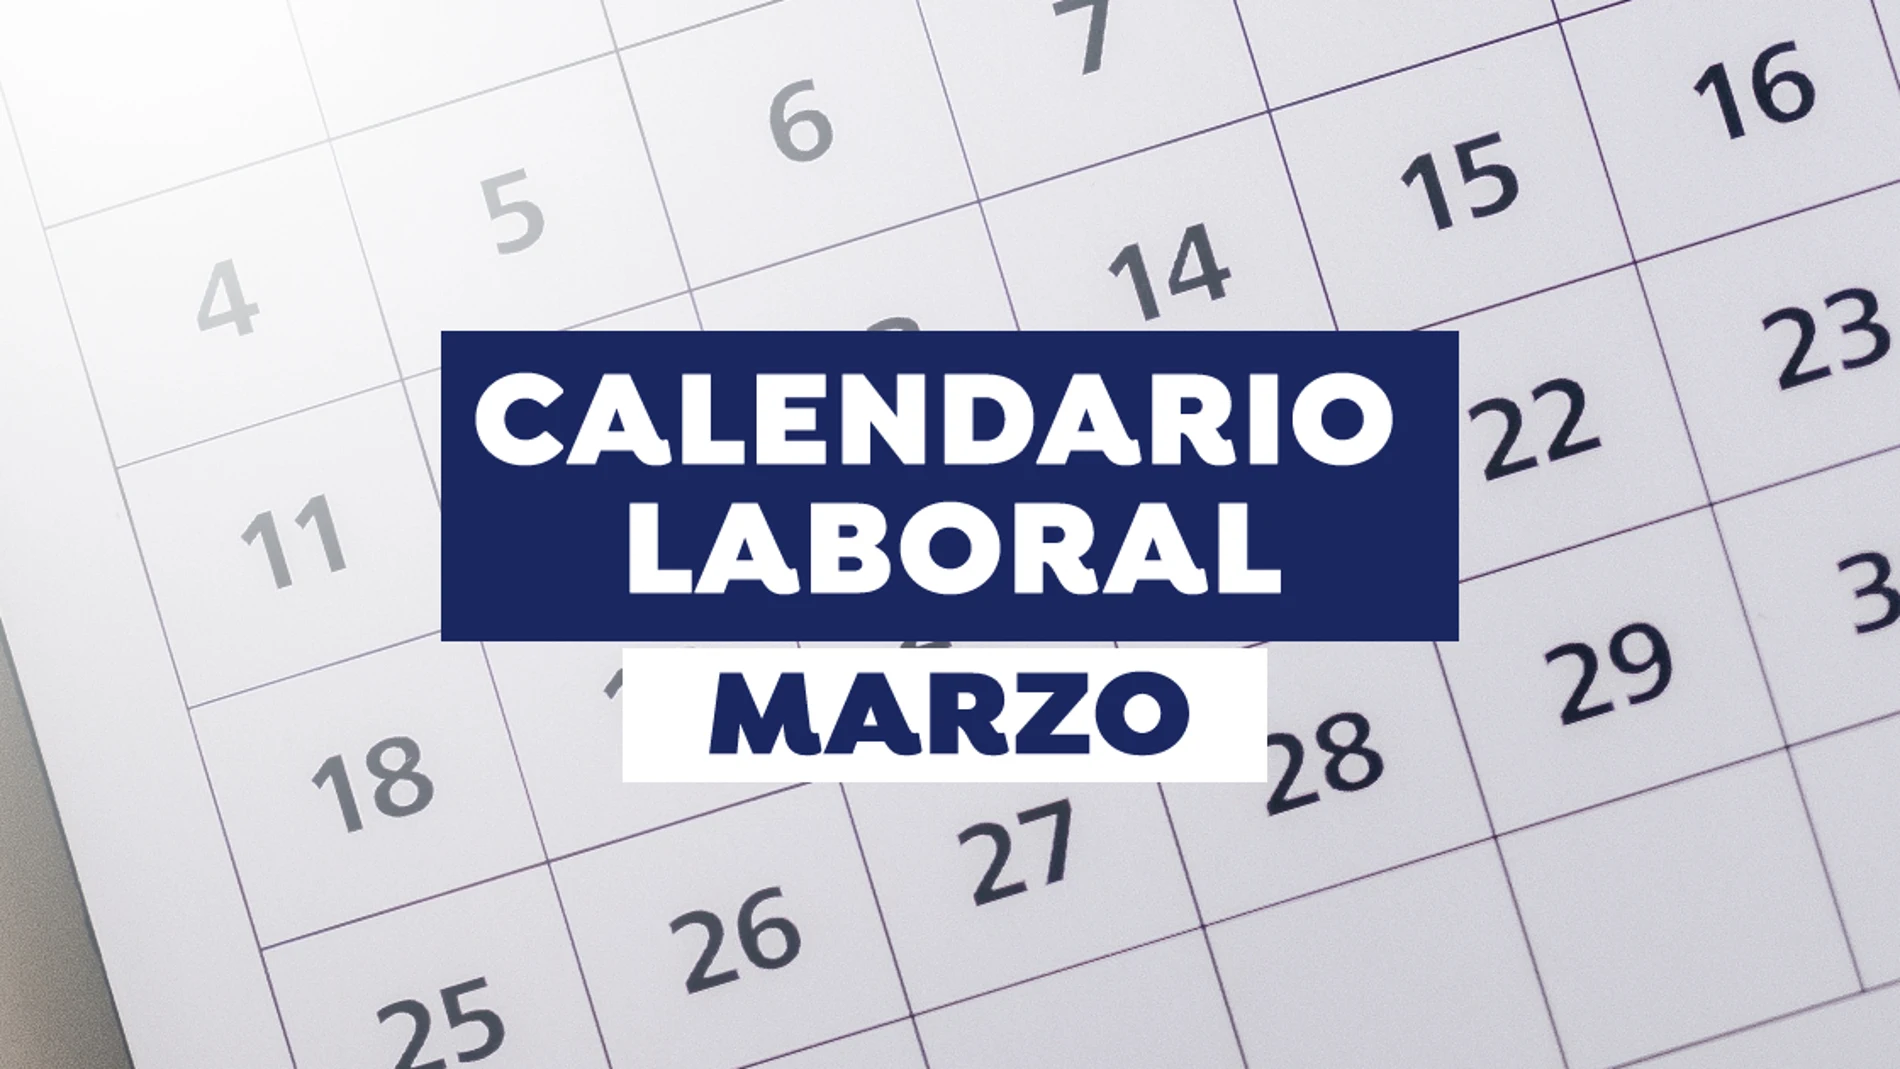 Calendario laboral marzo 2021: Días festivos y puentes